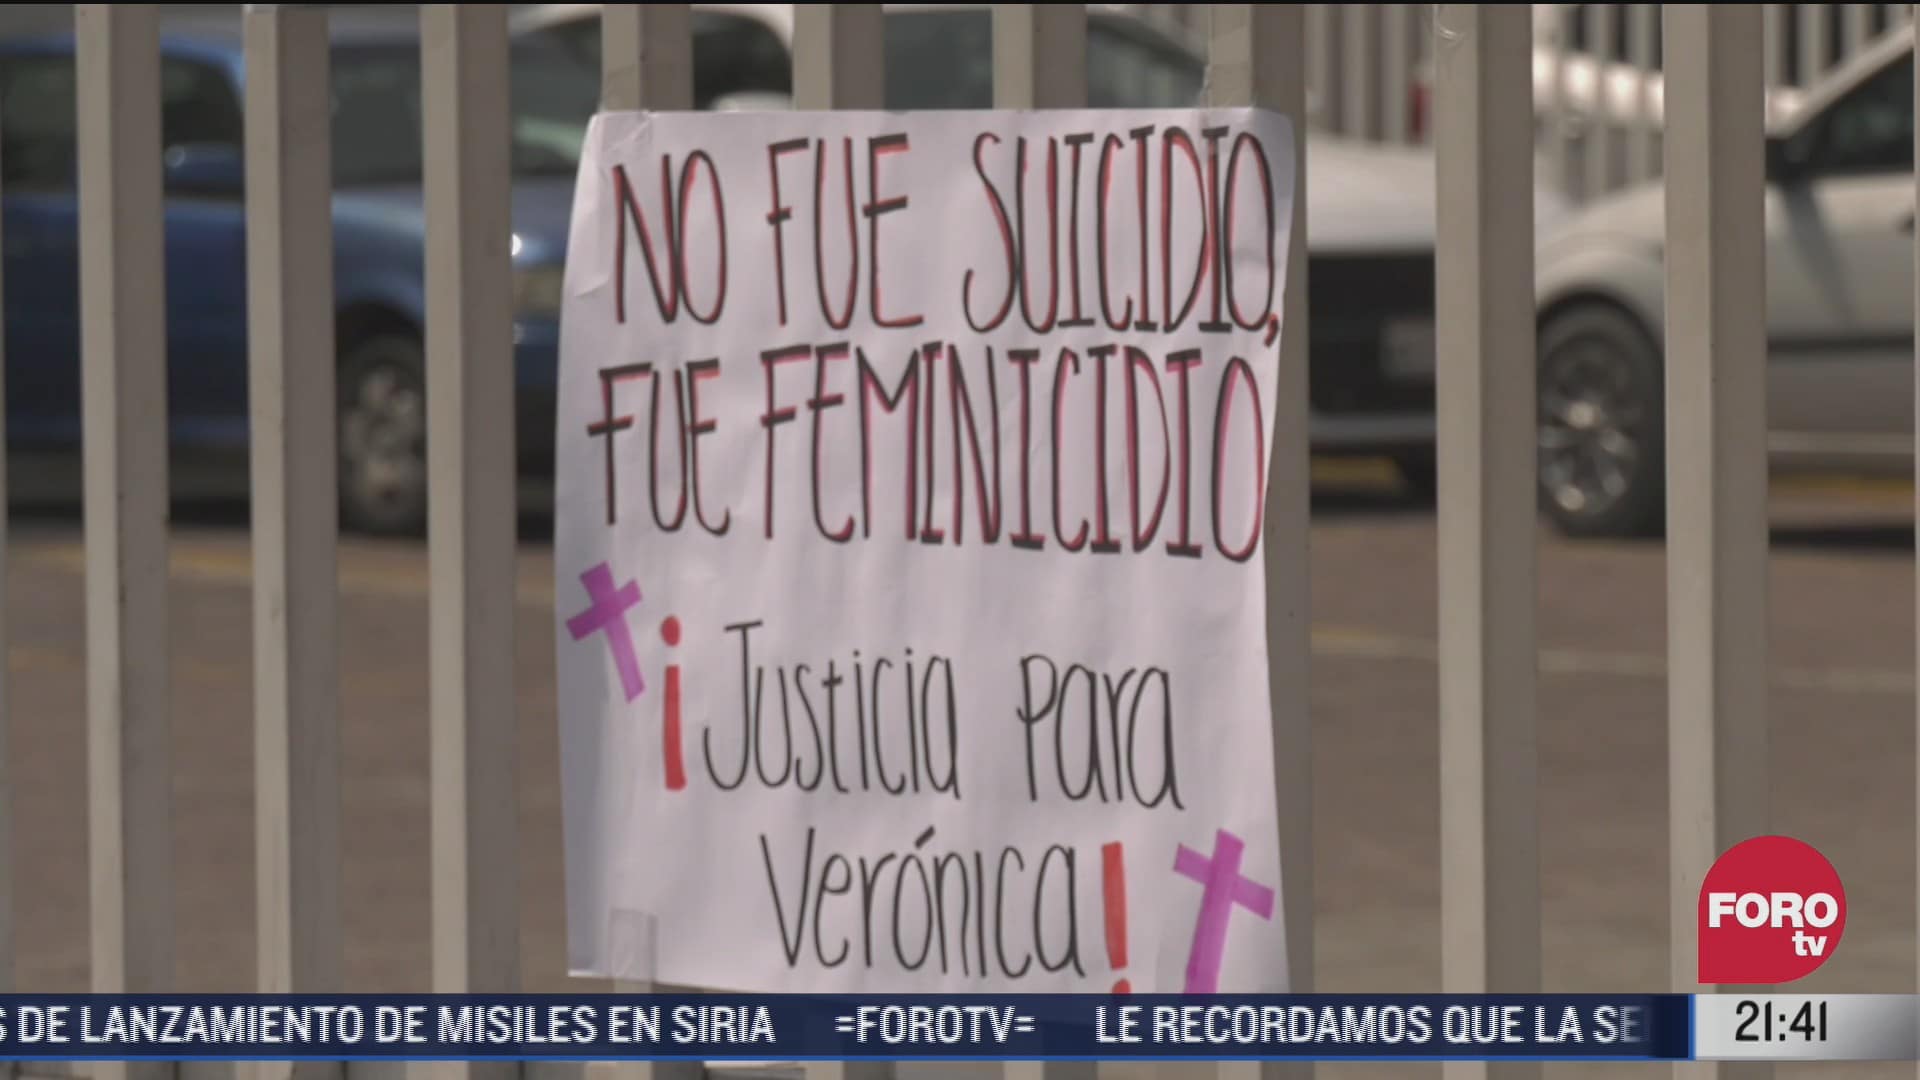 autoridades dicen que veronica se suicido su familia asegura que fue victima de feminicidio